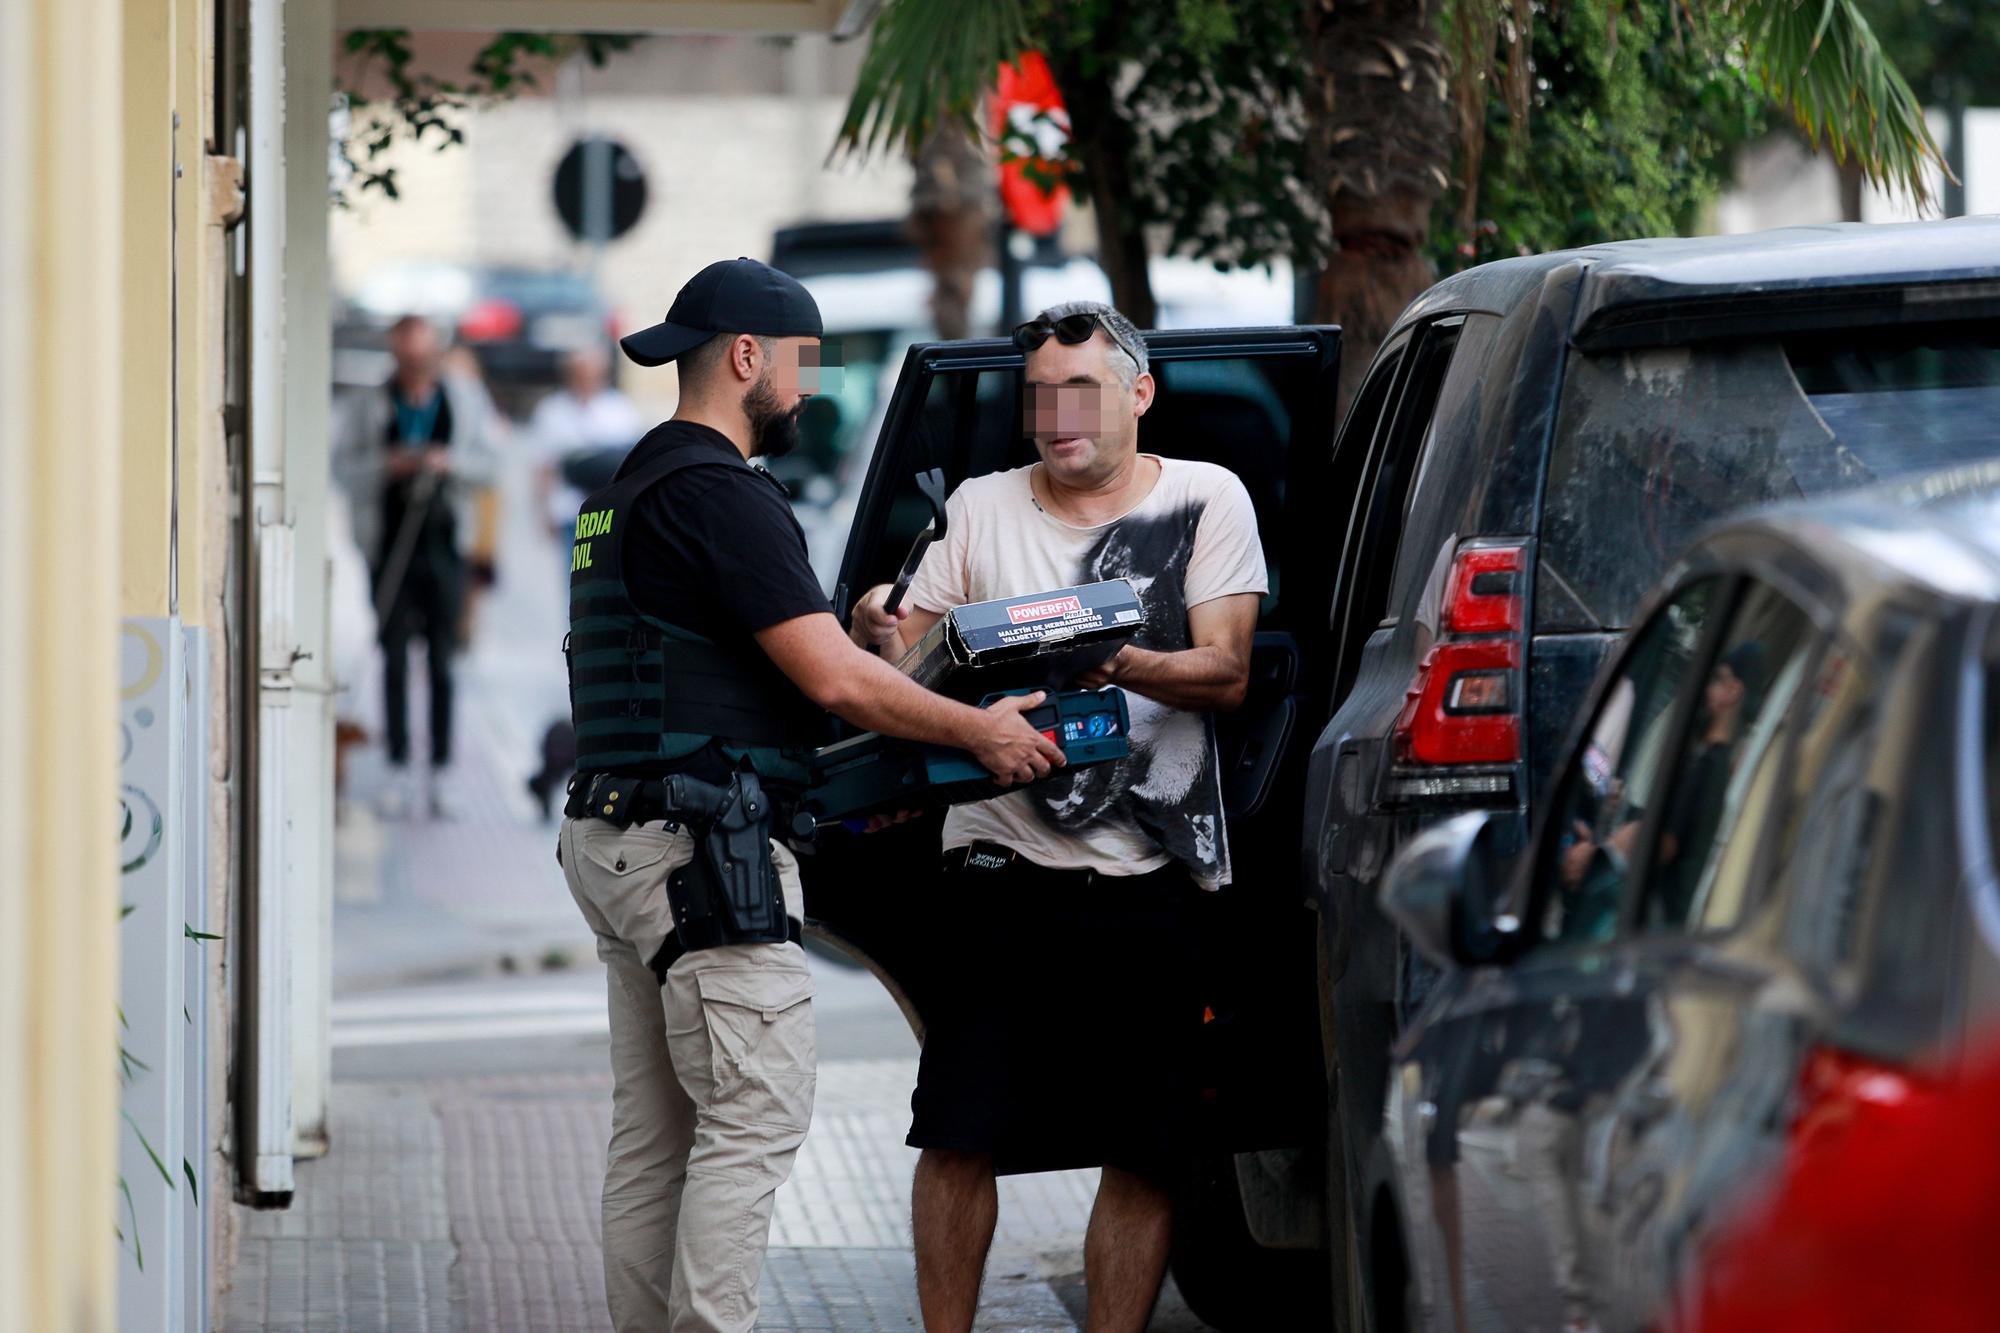 Las imágenes del registro de la Guardia Civil de Ibiza en la calle Arxiduc Lluis Salvador